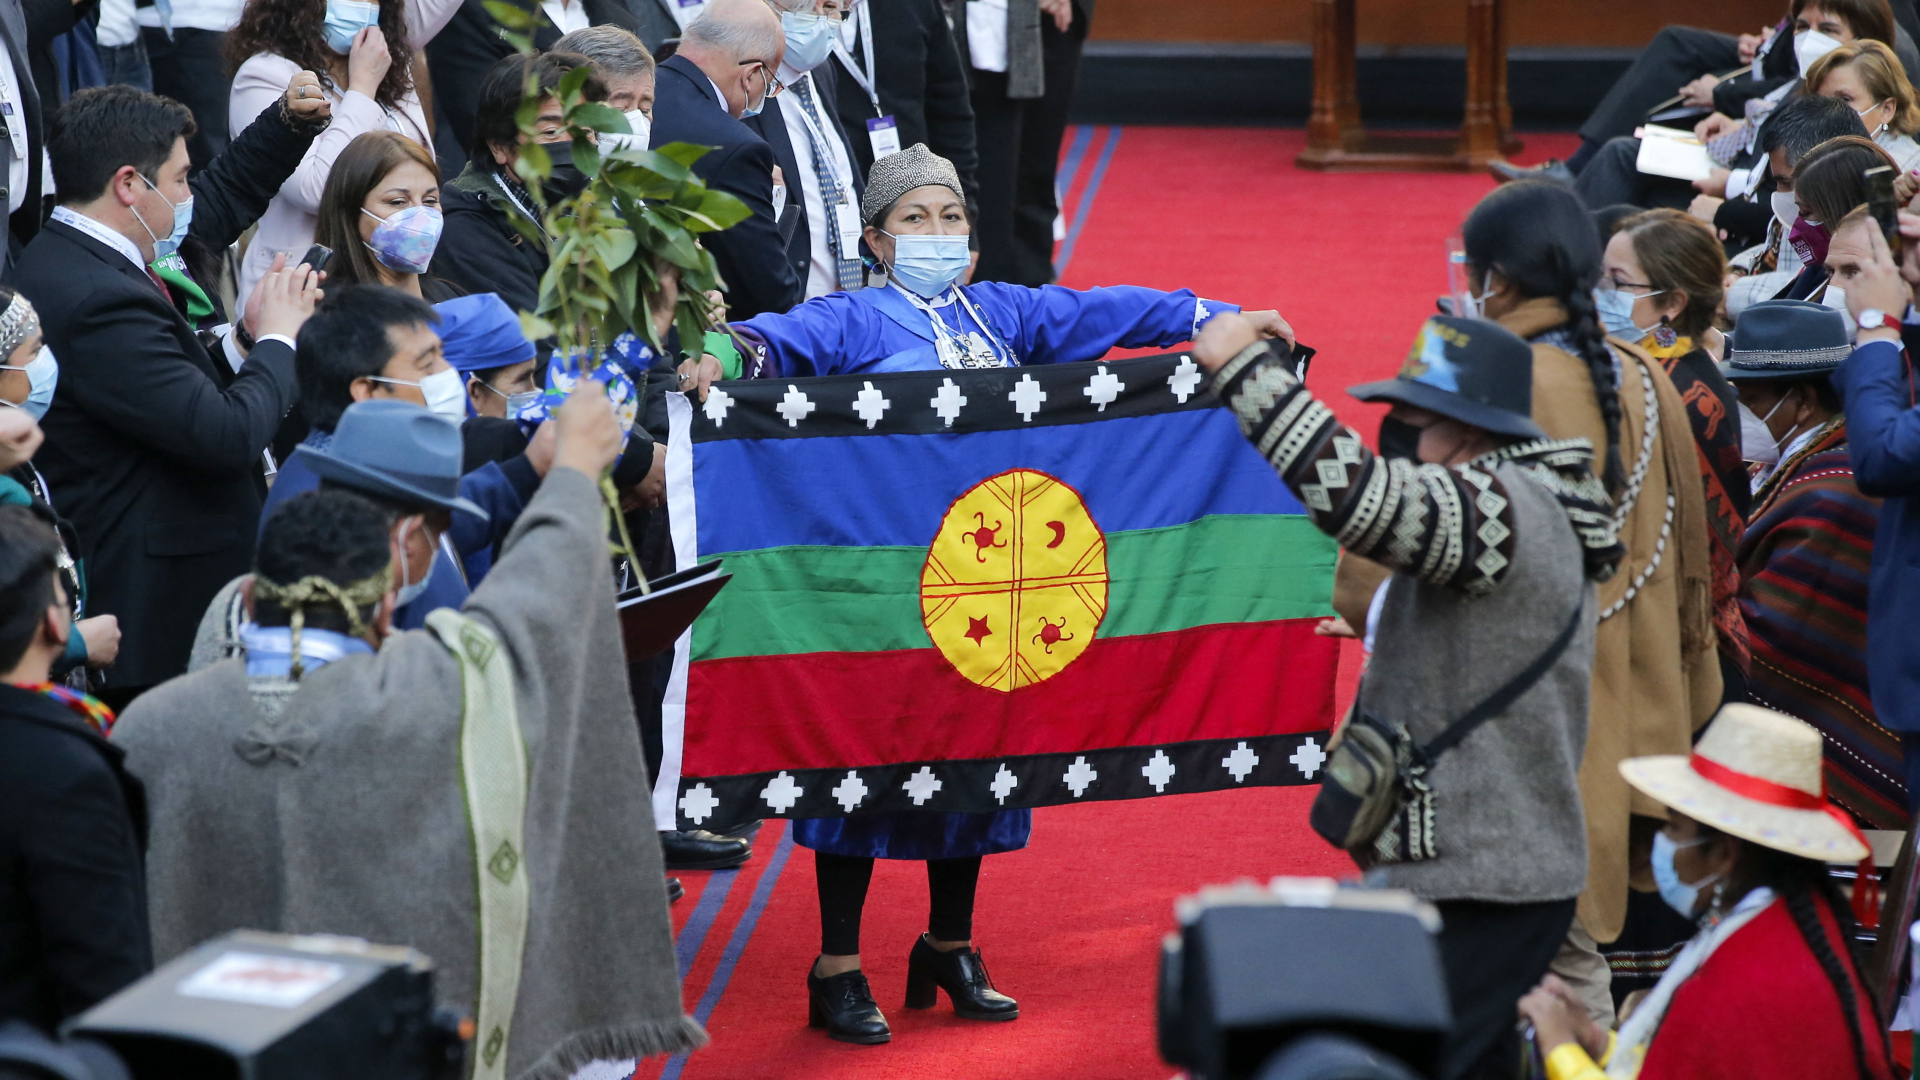 Elisa Loncón zeigt die Flagge der Mapuche im chilenischen Verfassungskonvent | AFP